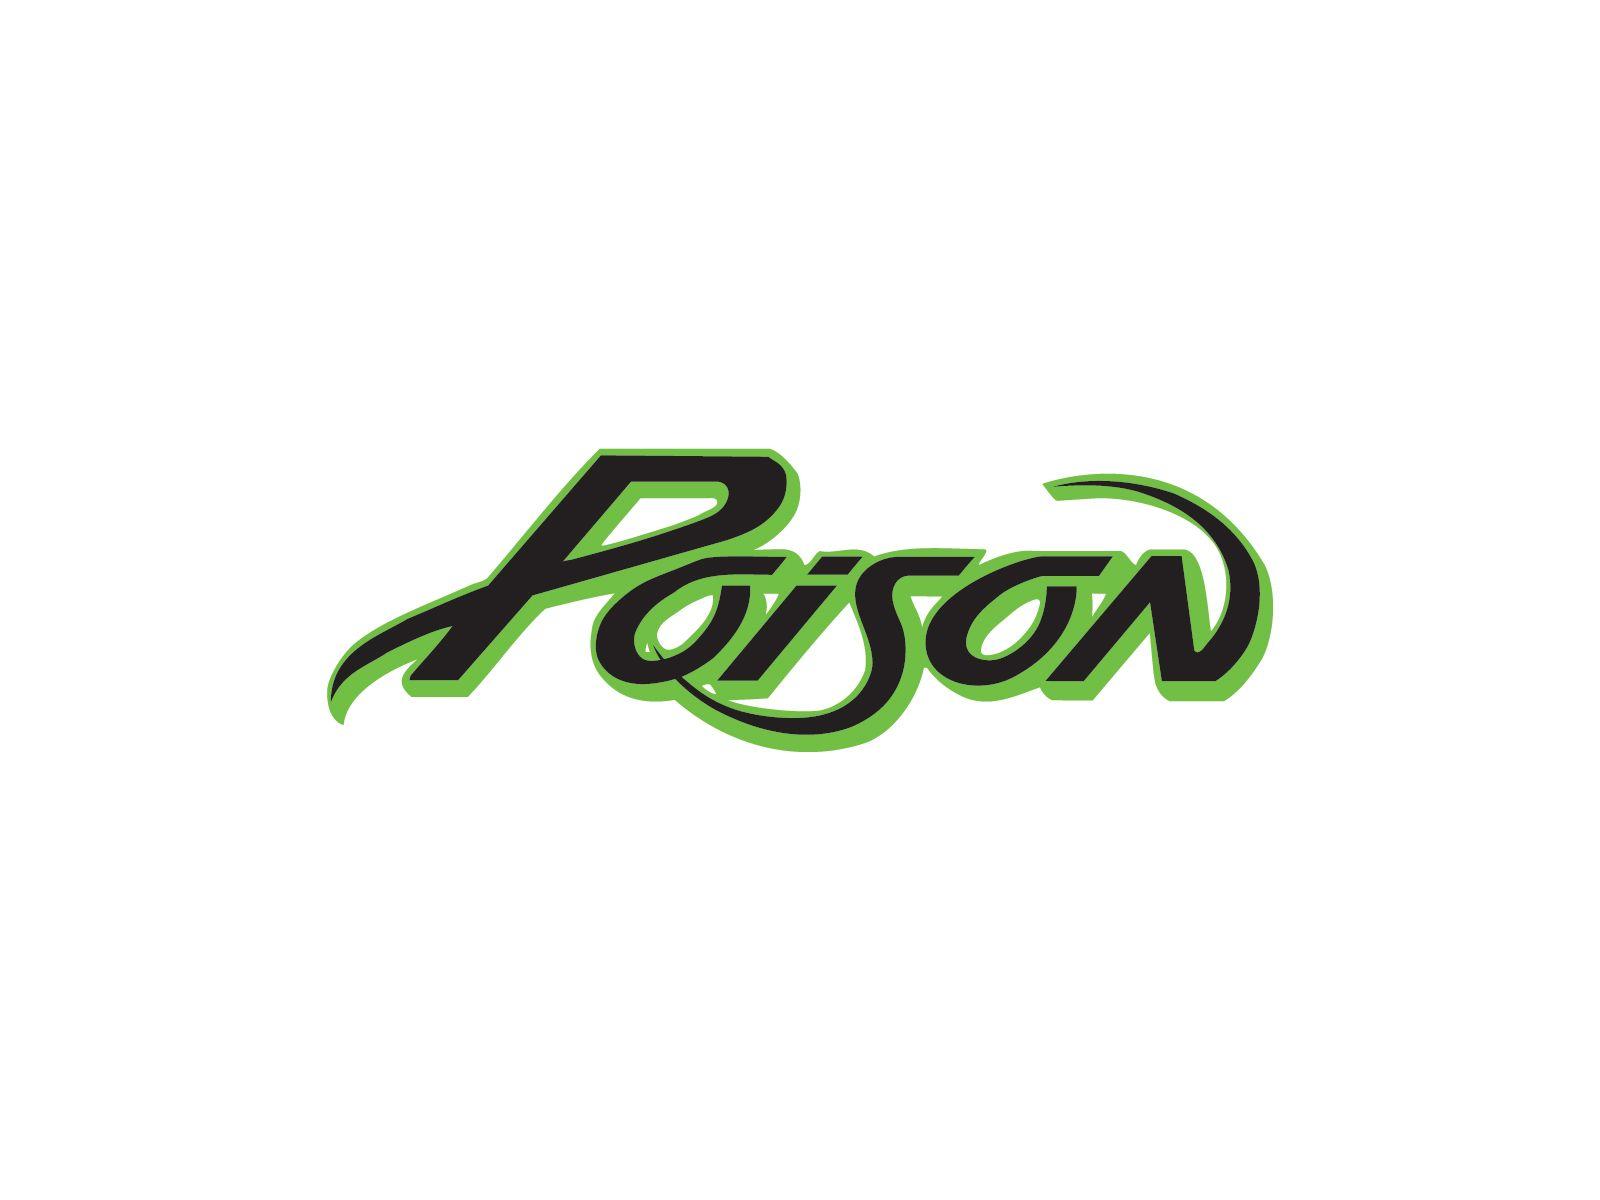 Poison Band Logo - Poison band logo | Band logos | Band logos, Metal bands, Rock band logos